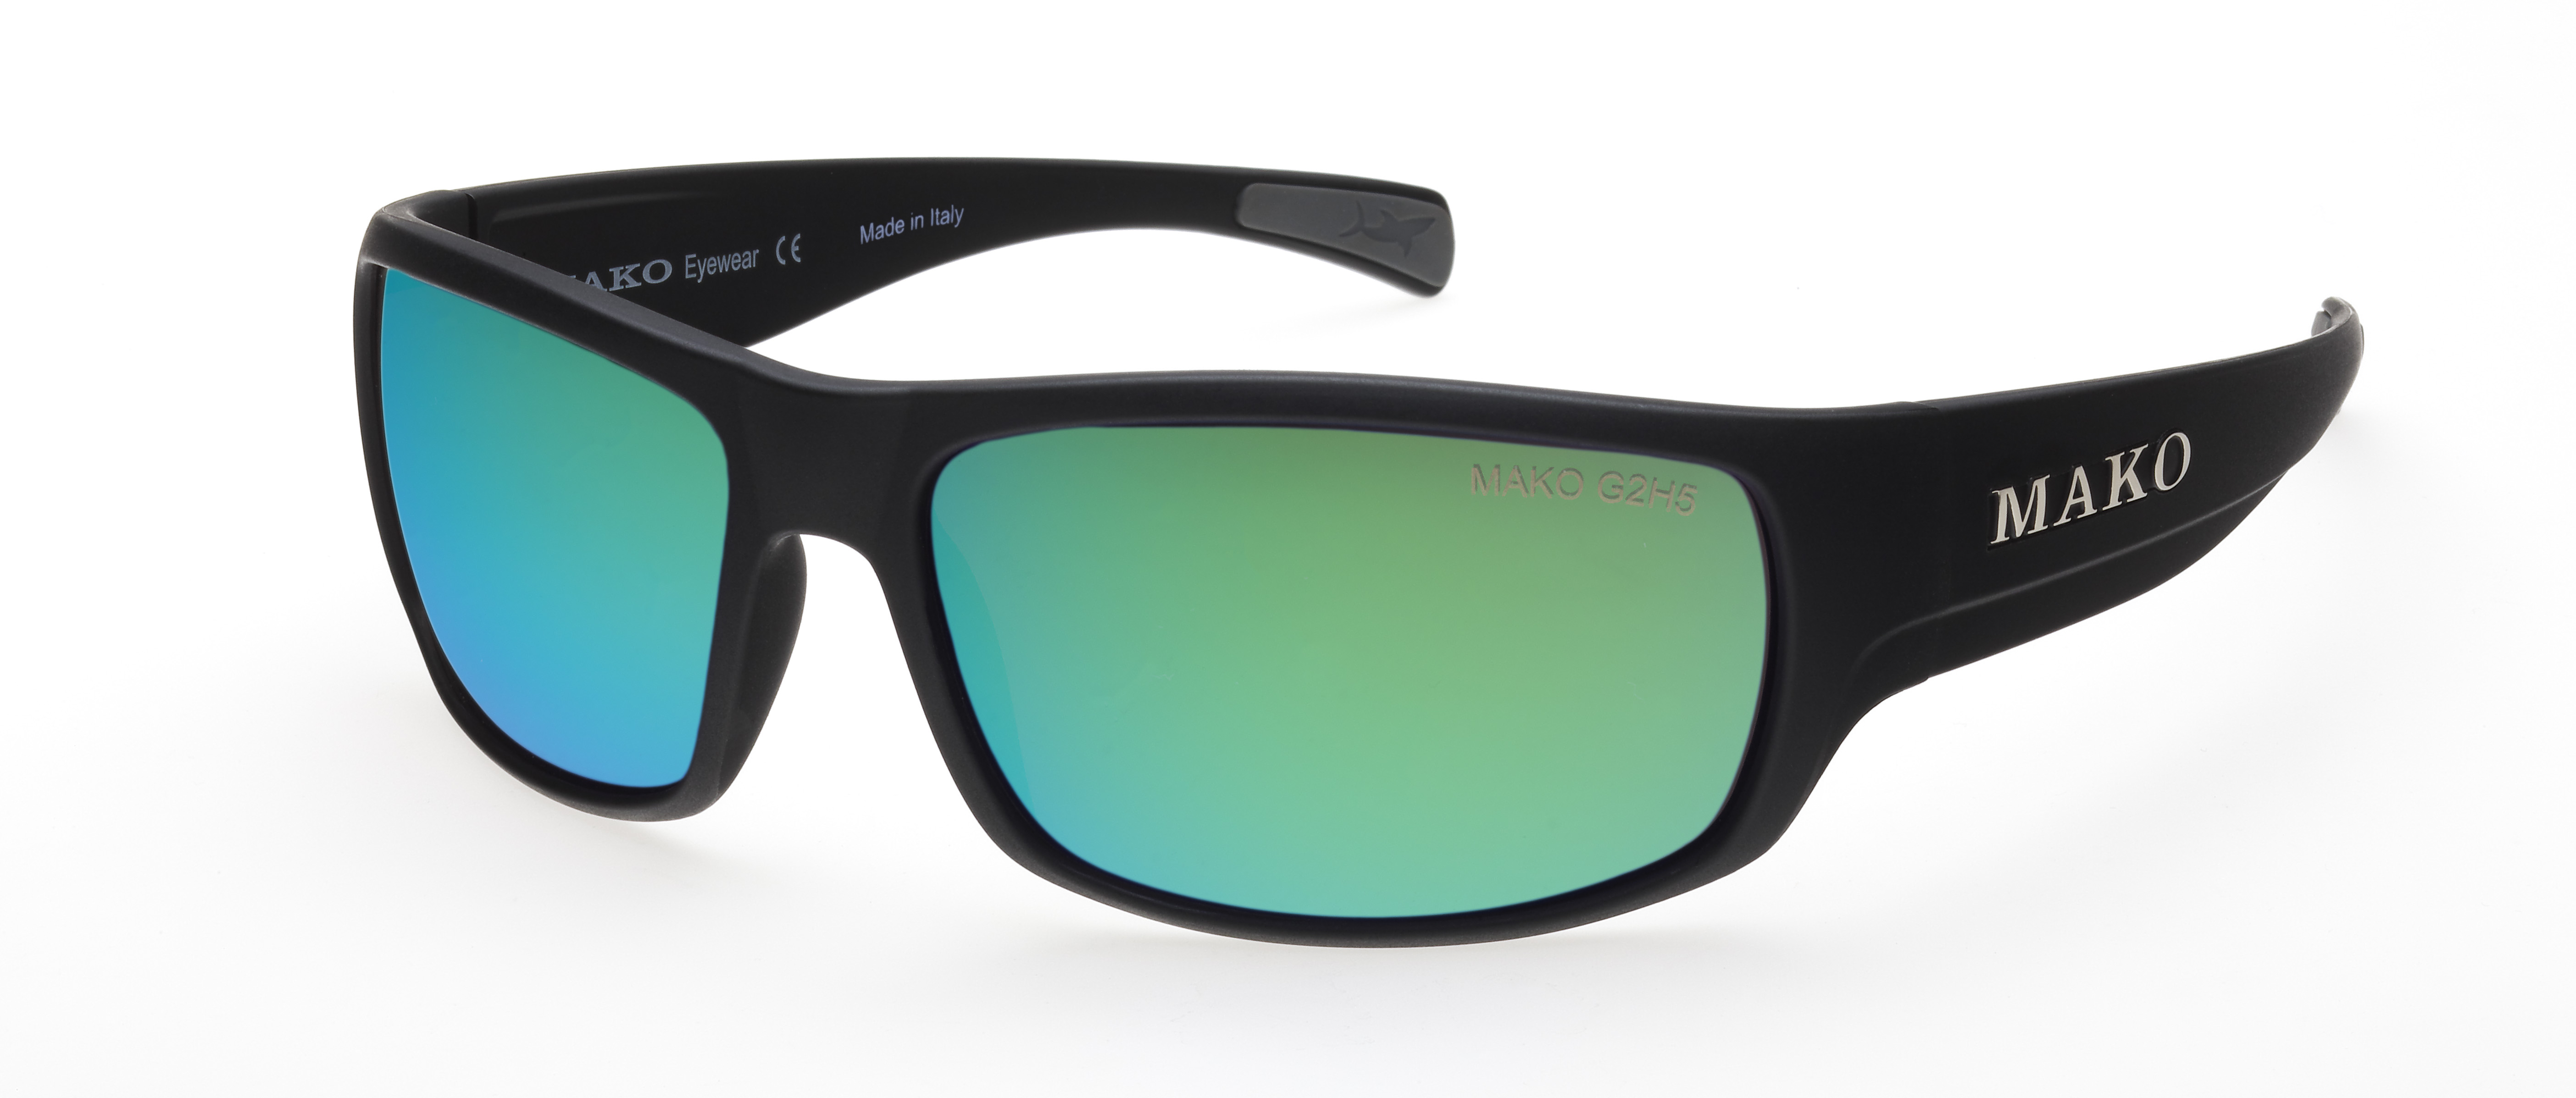 G2H5 Rose Base/Green Mirror - Mako Eyewear polarised sunglasses